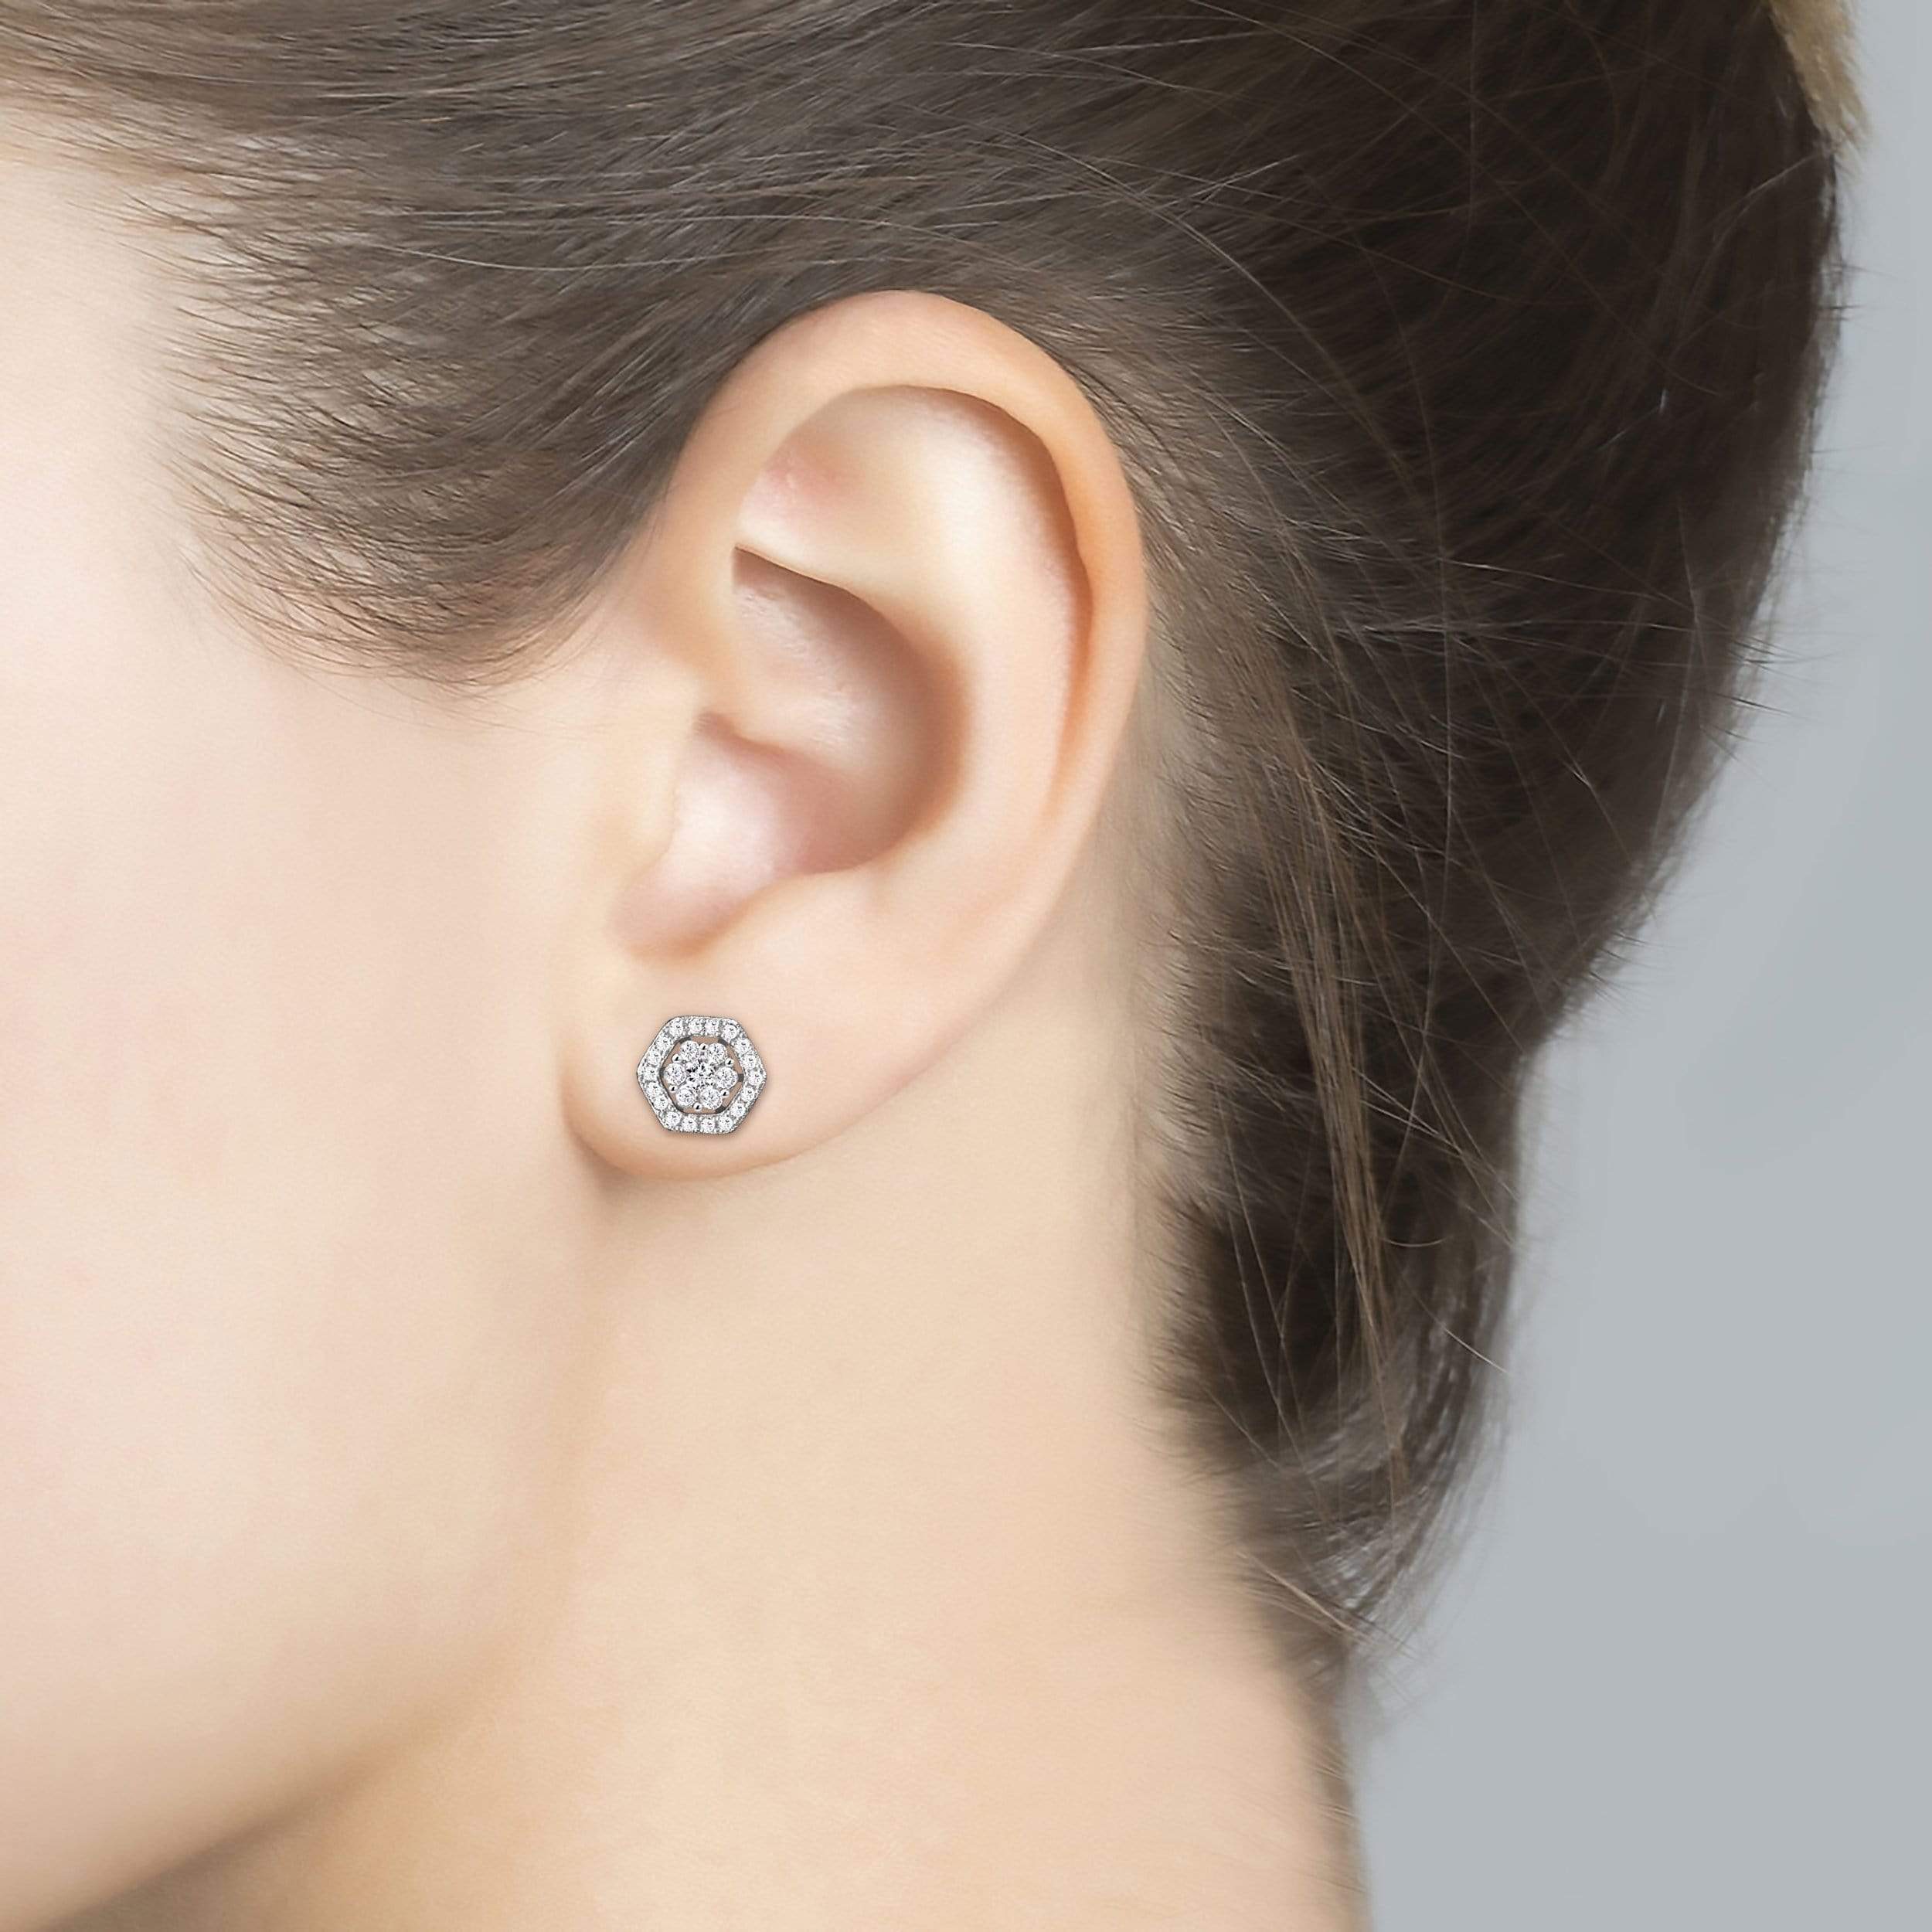 Lynora Jewellery Earring Sterling Silver Hexagono Flower Earrings Sterling Silver